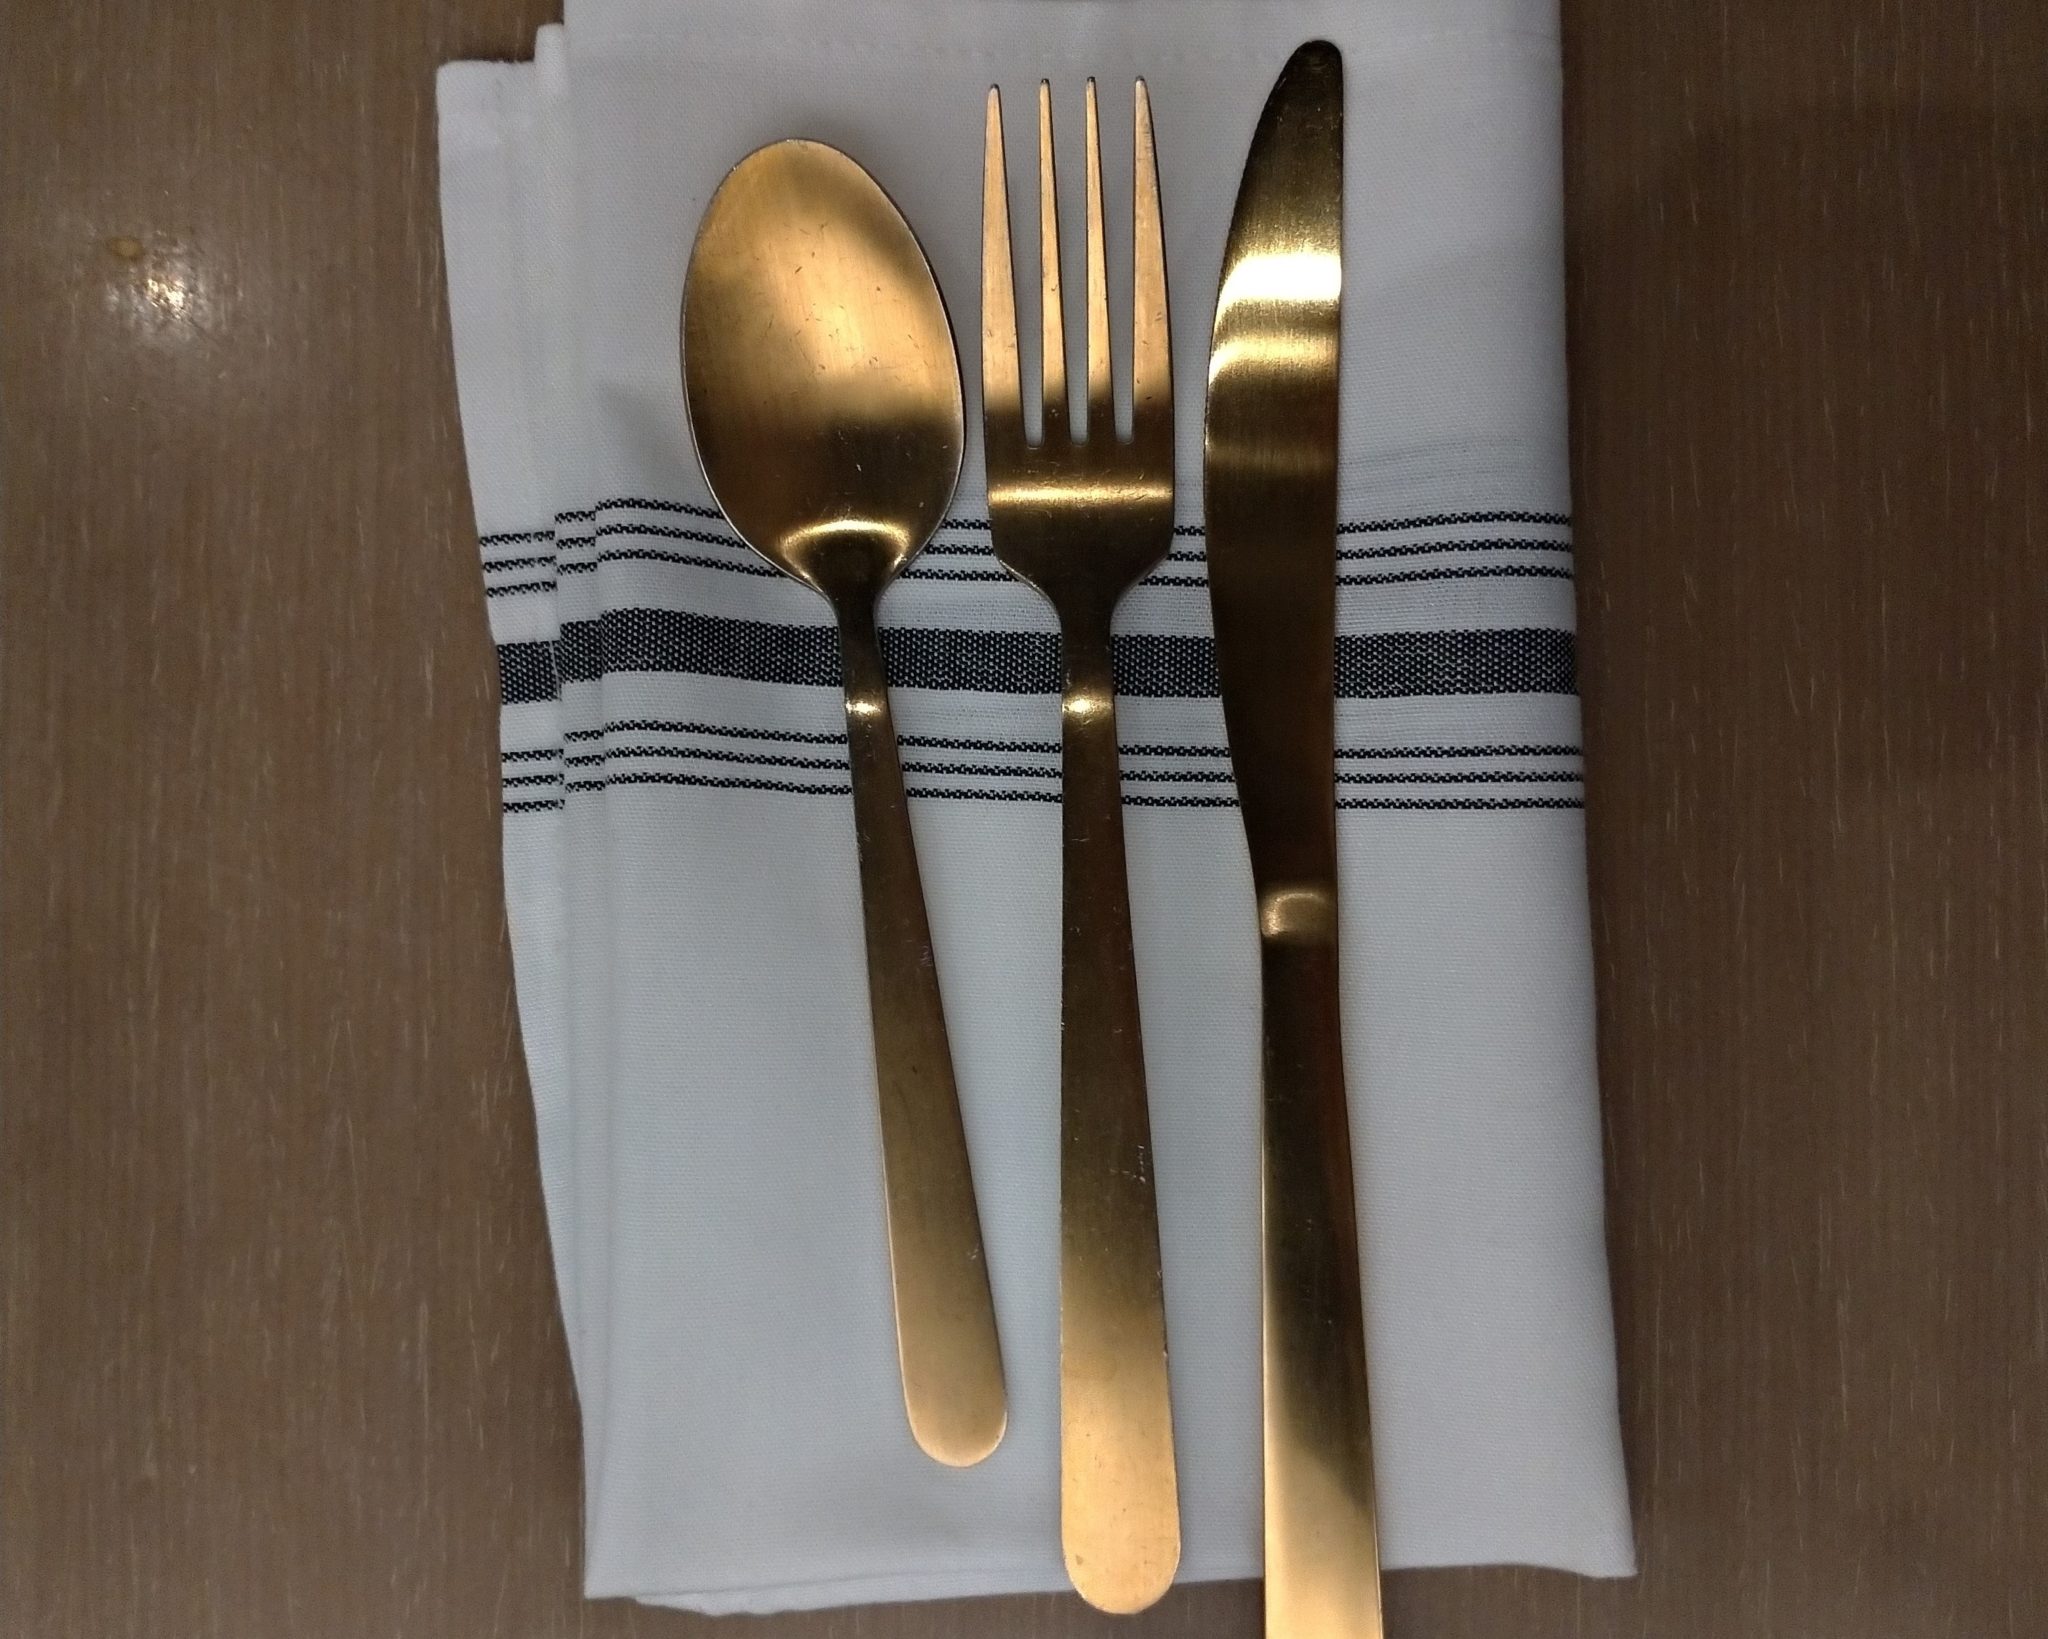 Fourchette, Couteau et cuillère couleur brinze posées sur une serviette de table blanche.